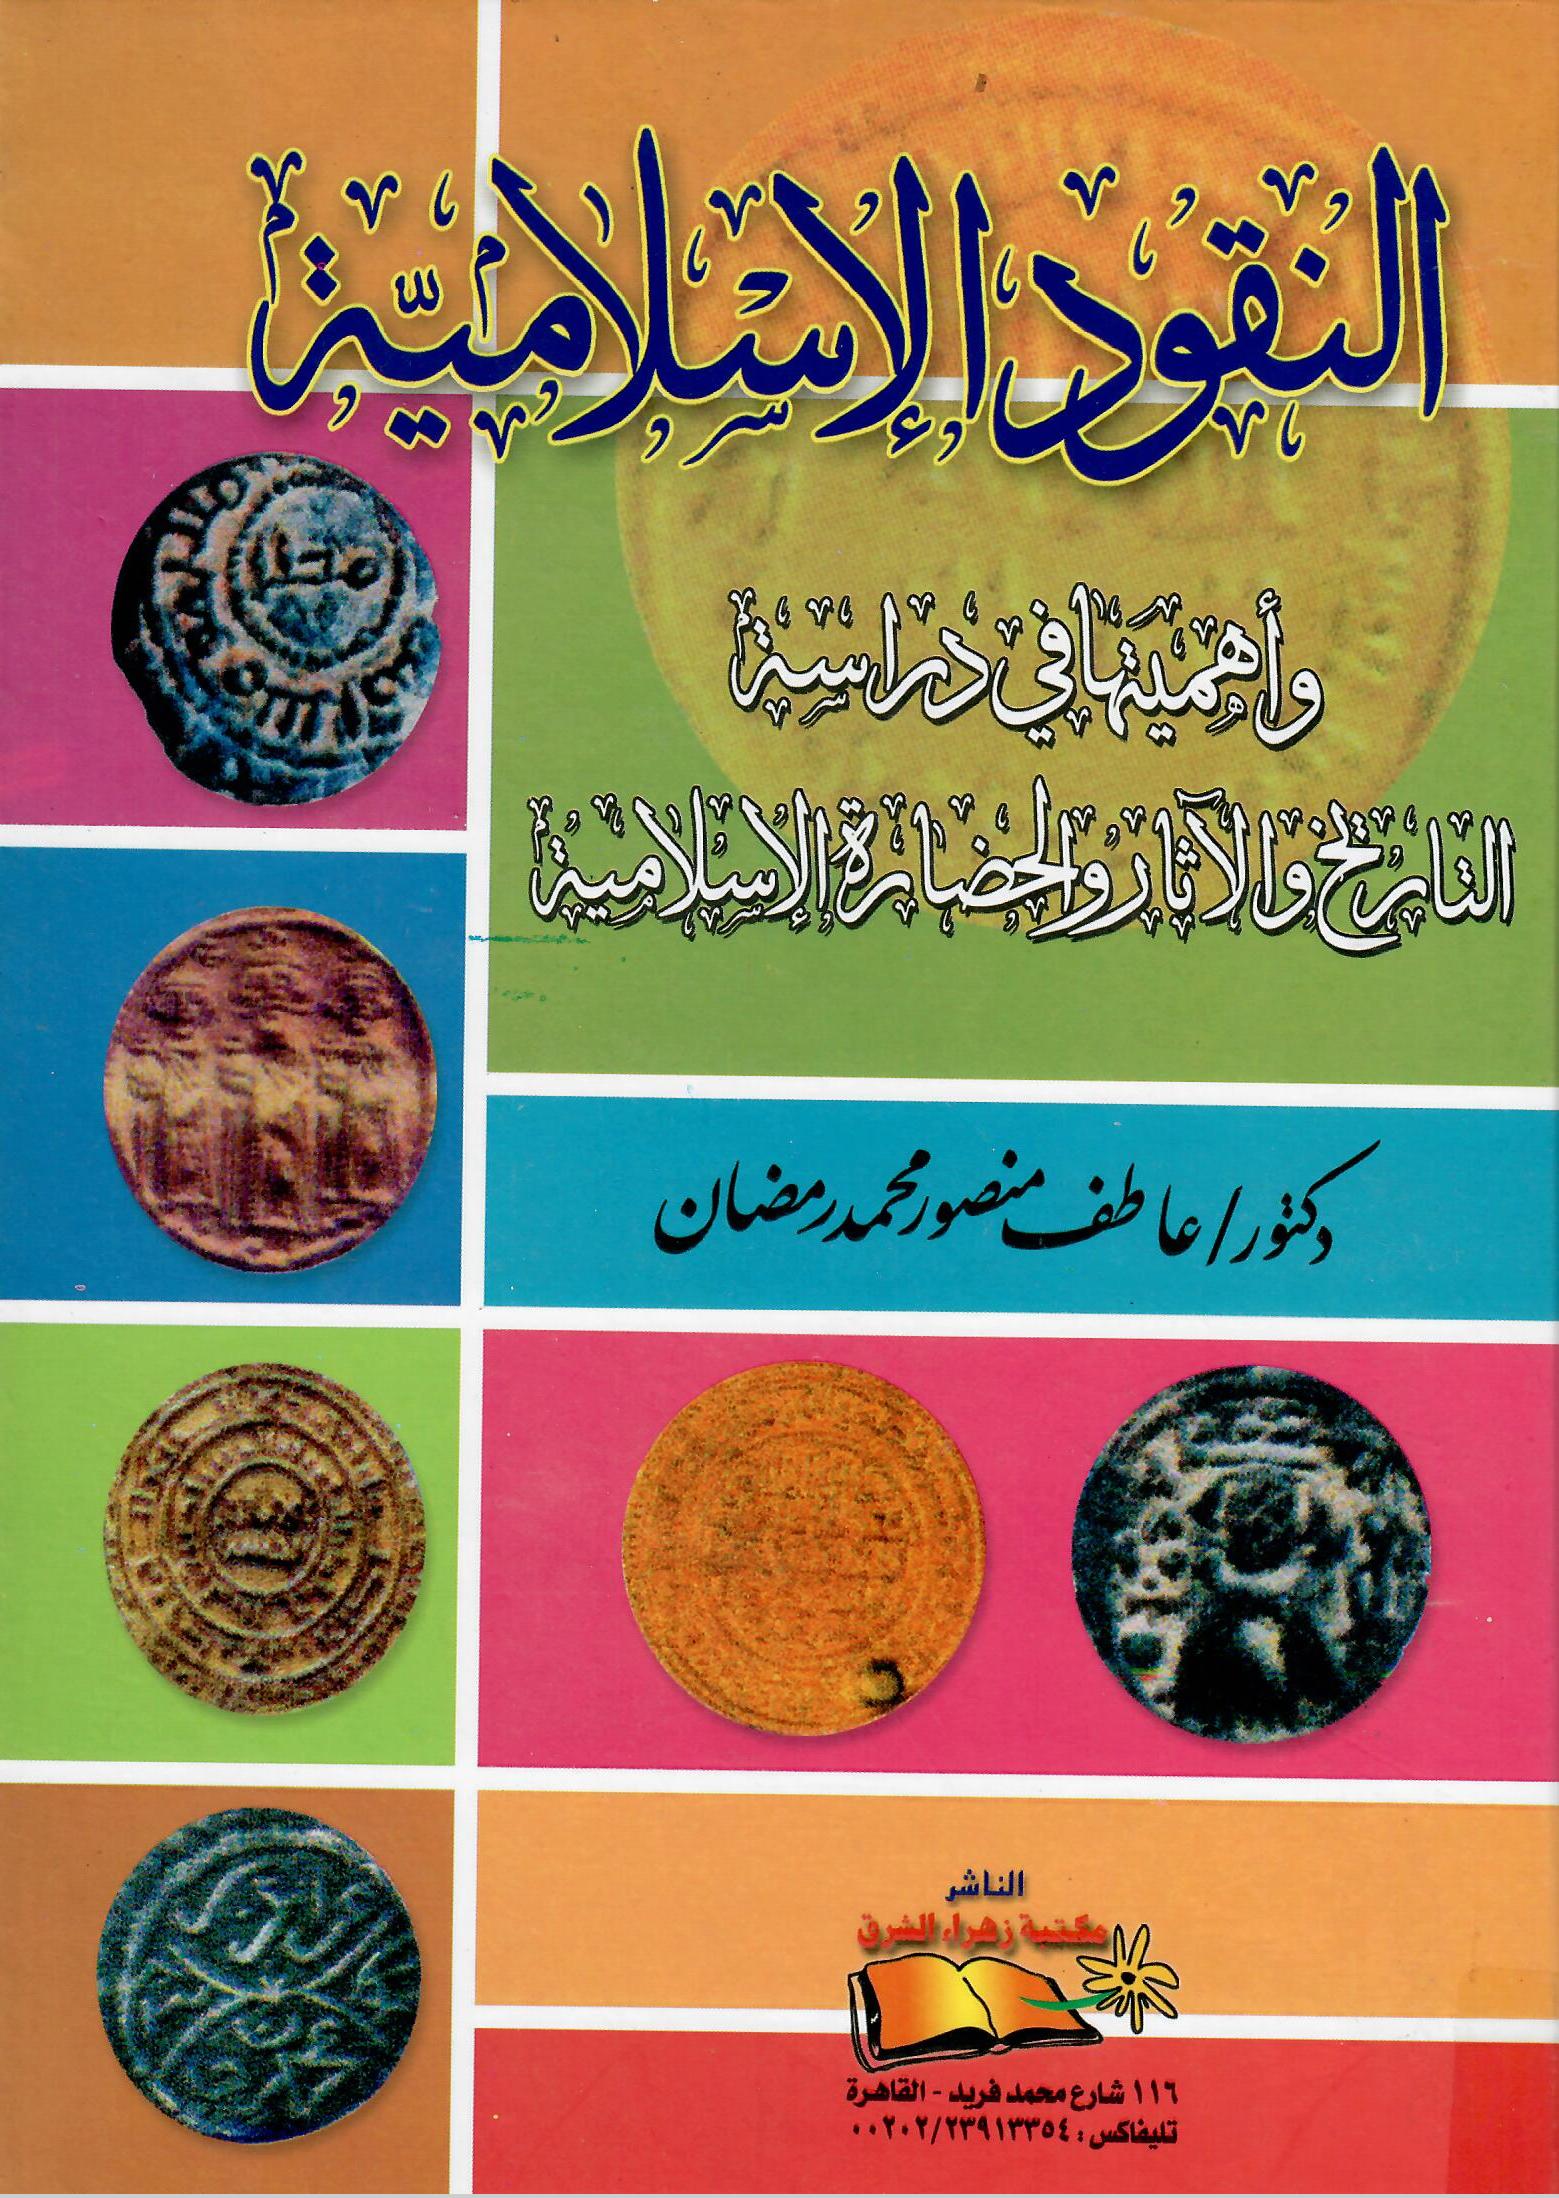 النقود الإسلامية وأهميتها في دراسة التاريخ والآثار والحضارة الإسلامية